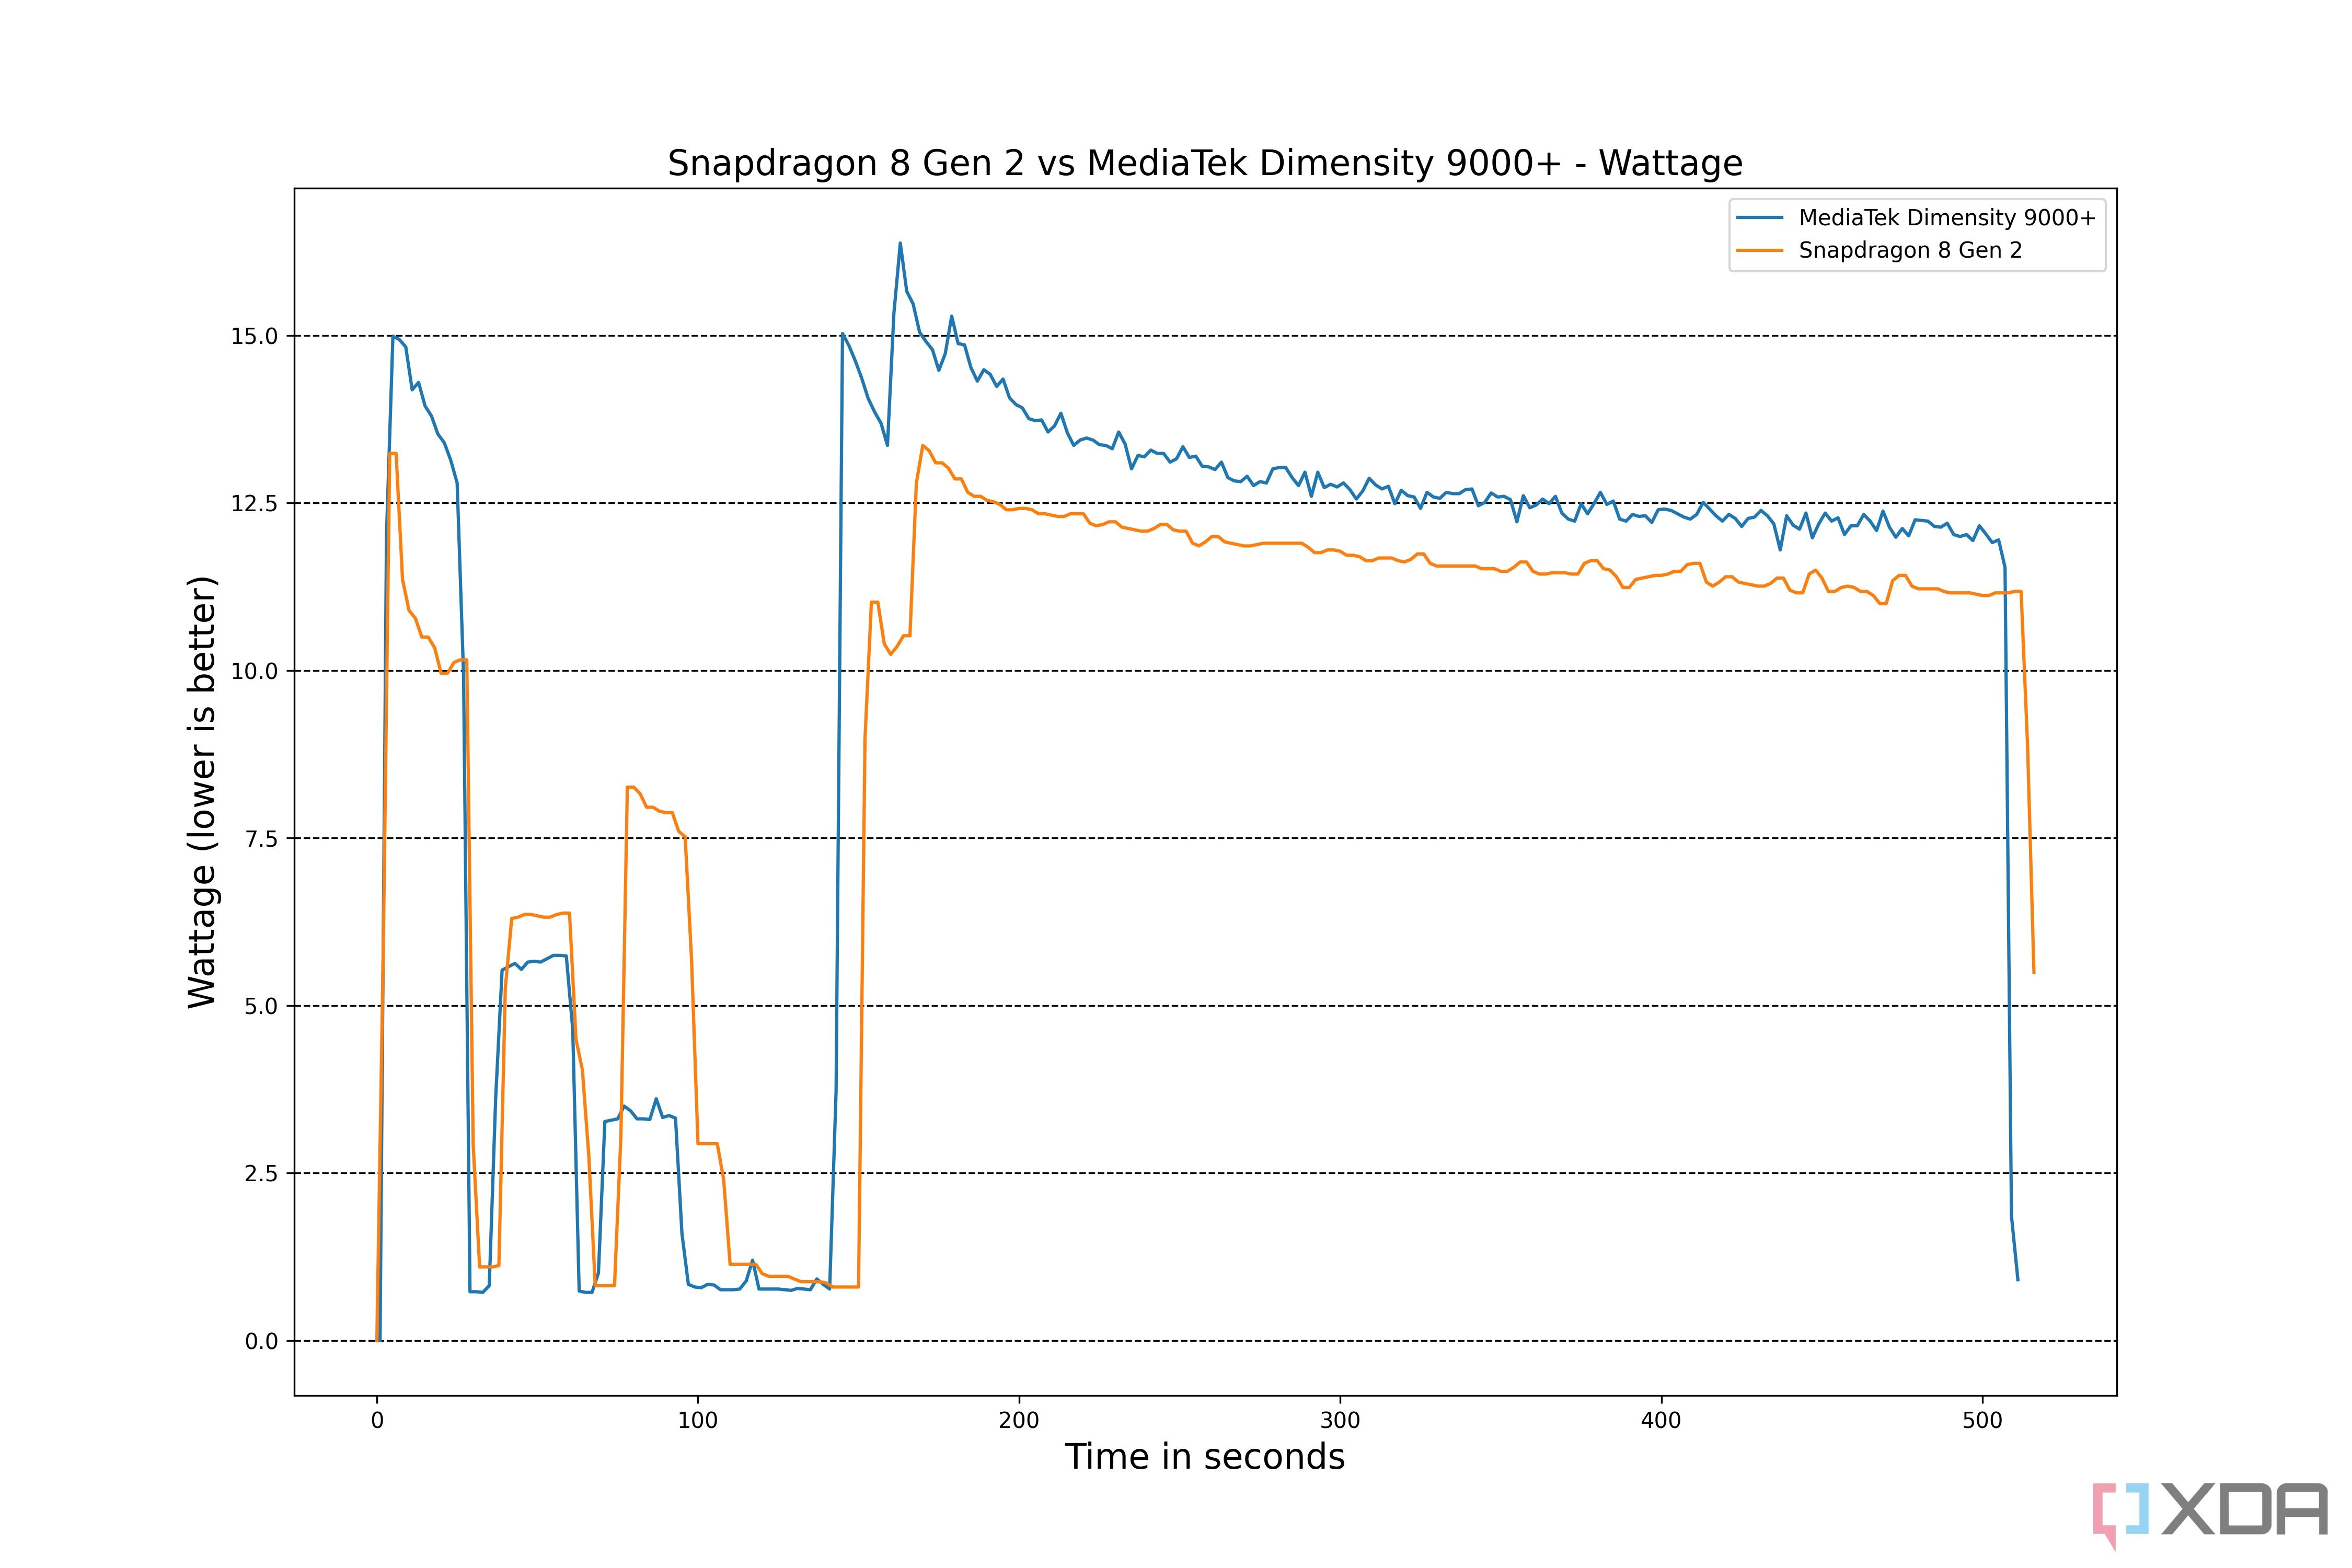 Qualcomm-Snapdragon-8-Gen-2-vs-MediaTek-Dimensity-9000+-Wattage-Fixed